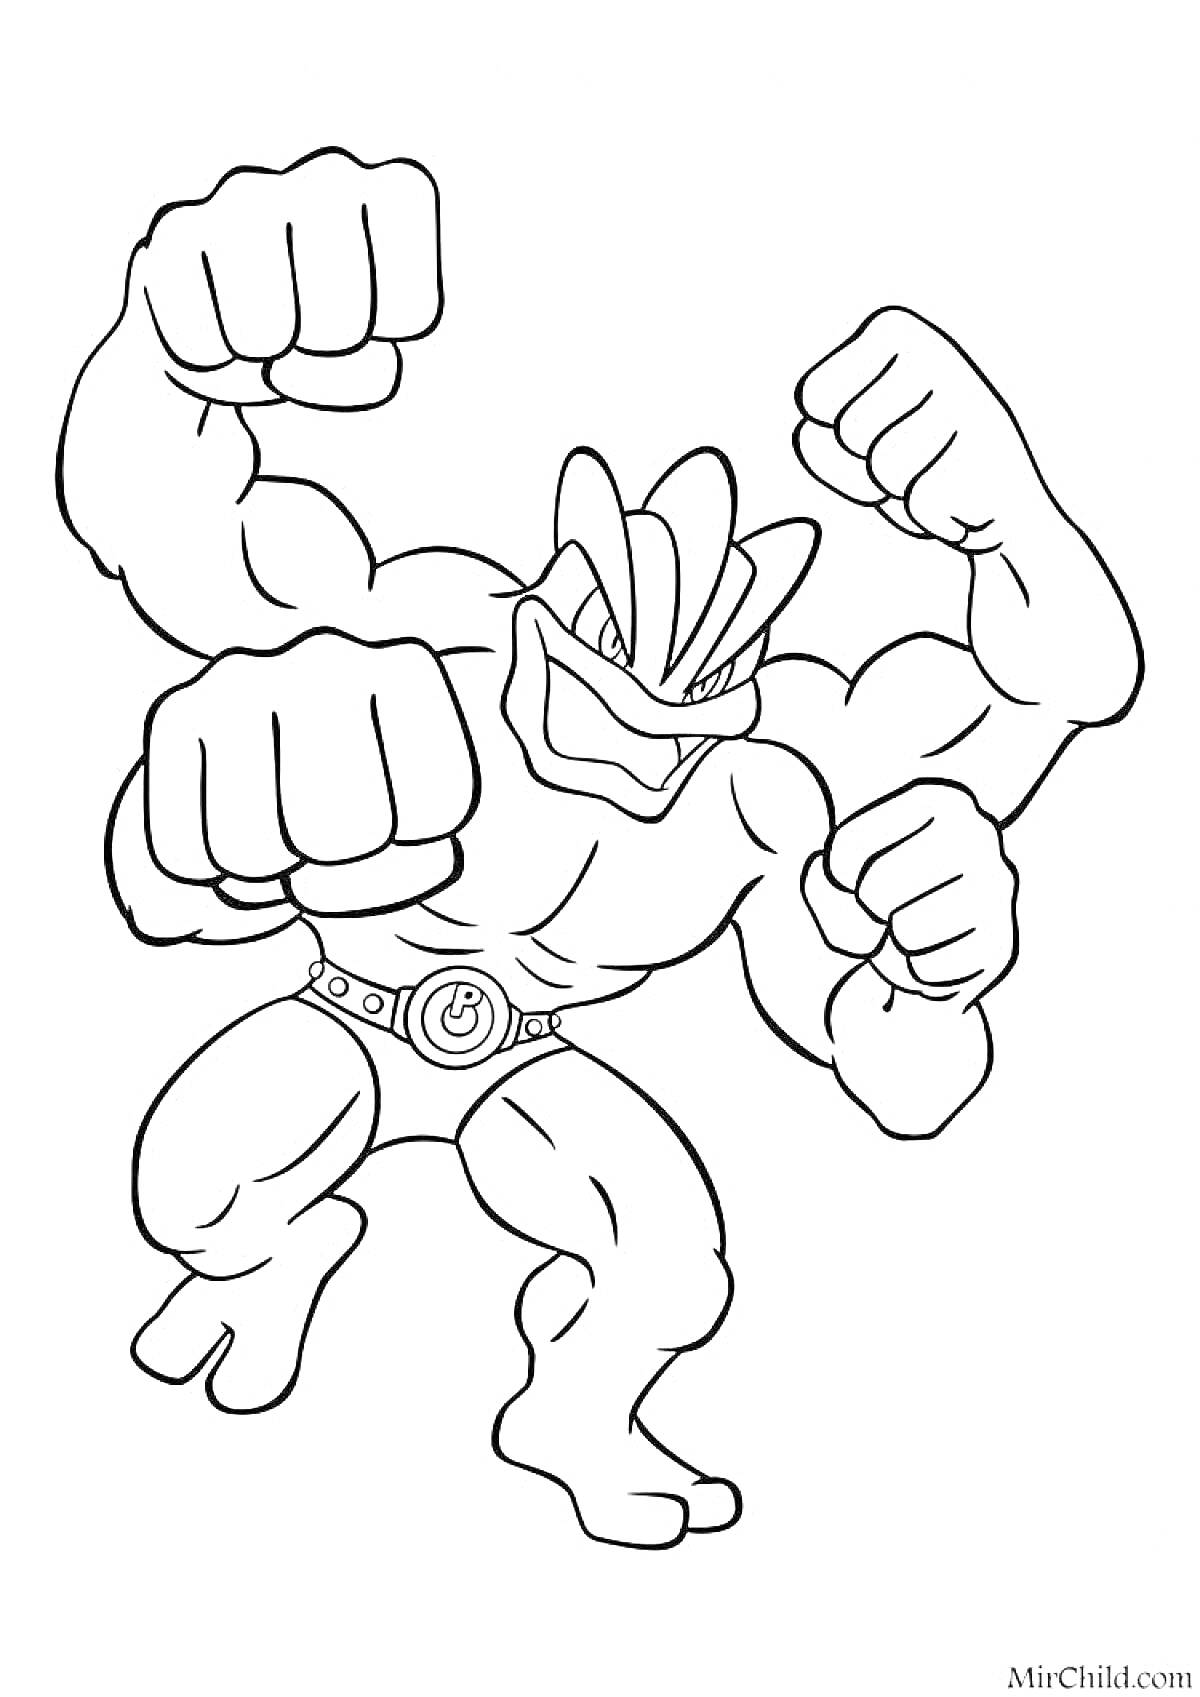 Боец Гуджитсу с четырьмя руками и мускулистым телом, в боевой позе